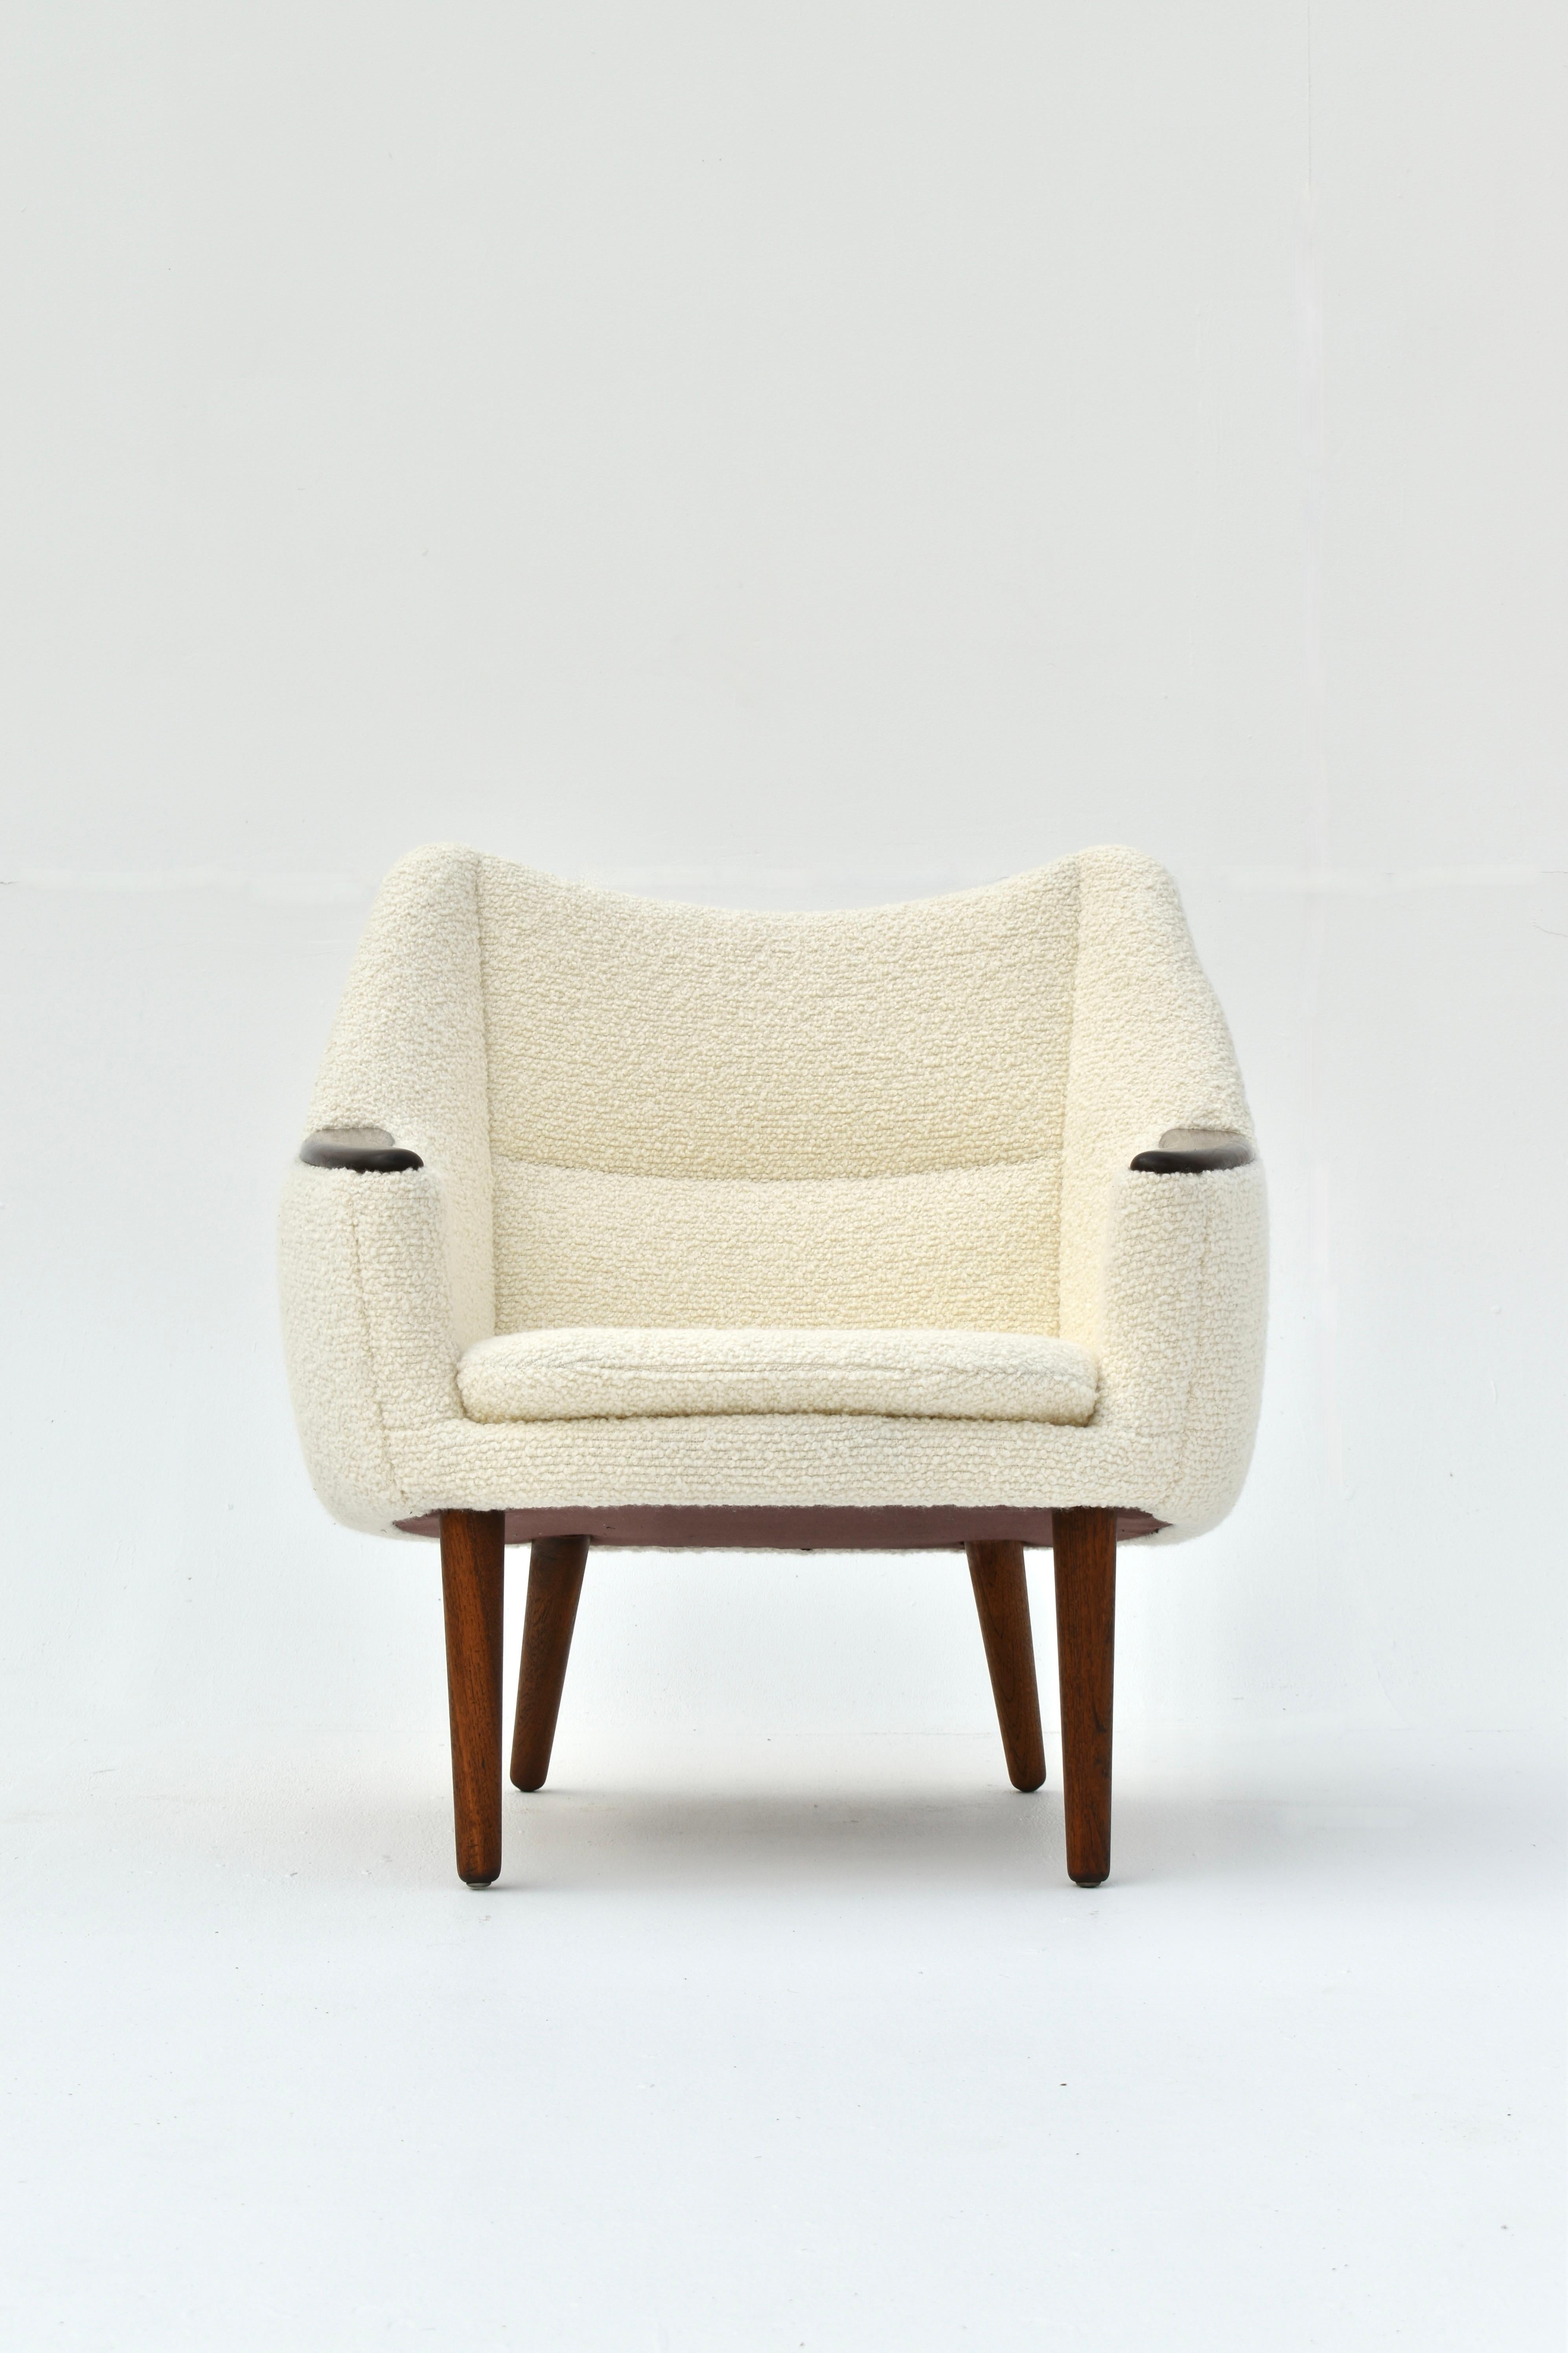 Chaise longue modèle 58, très rare, conçue par Kurt Østervig en 1958 pour Henry Rolschau Mobler, Danemark.

Un cadre en forme de cocon très accueillant, rembourré au plus haut niveau en laine Boucle de Bute Fabrics, en Écosse. Le tissu tactile est